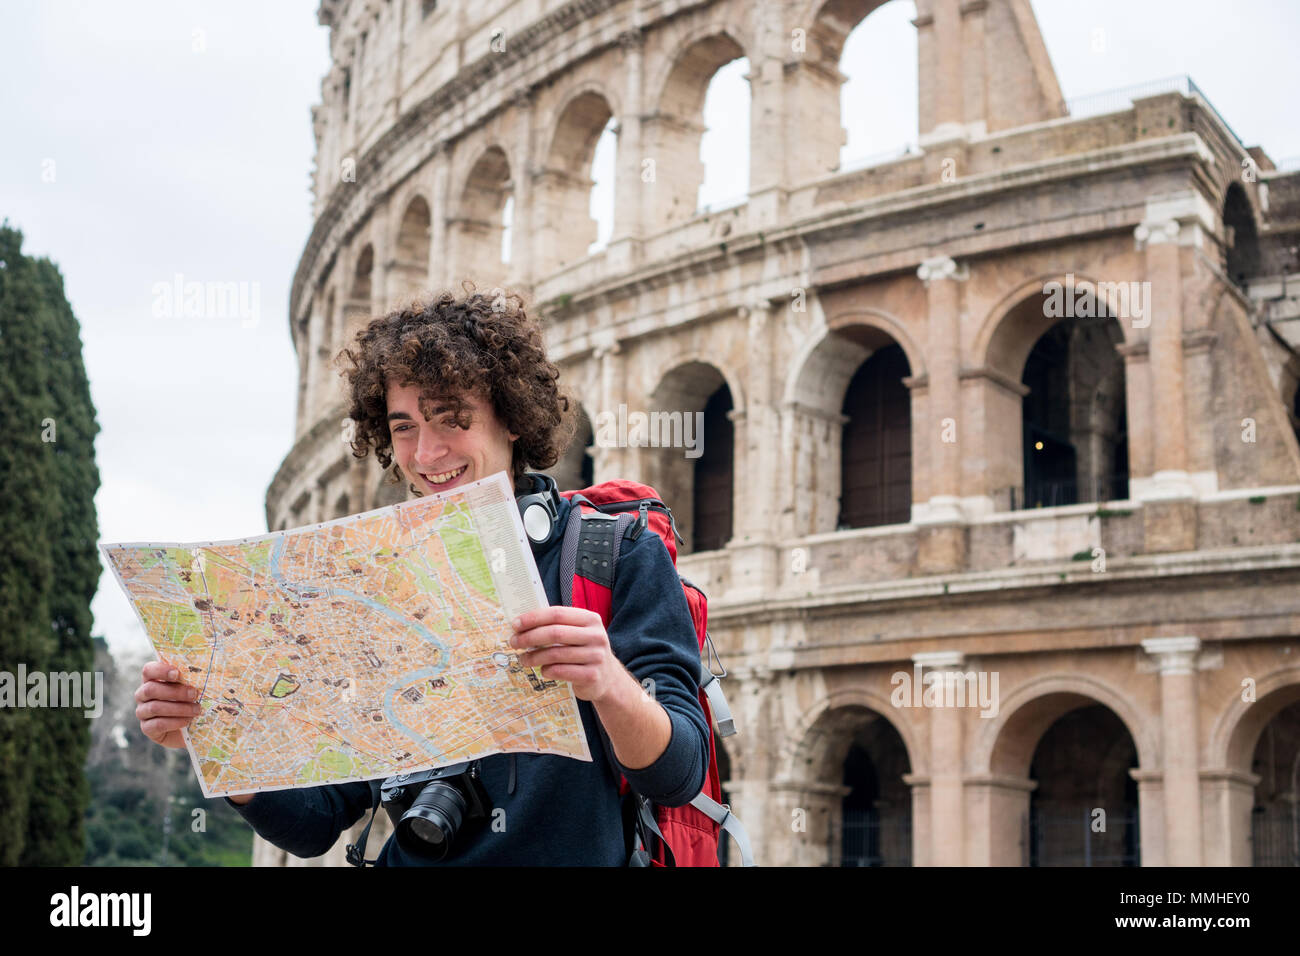 Hübscher junger Reisender an touristische Karte in Rom suchen vor dem Kolosseum. Backpacker mit Kamera und Touristische Karte Stockfoto